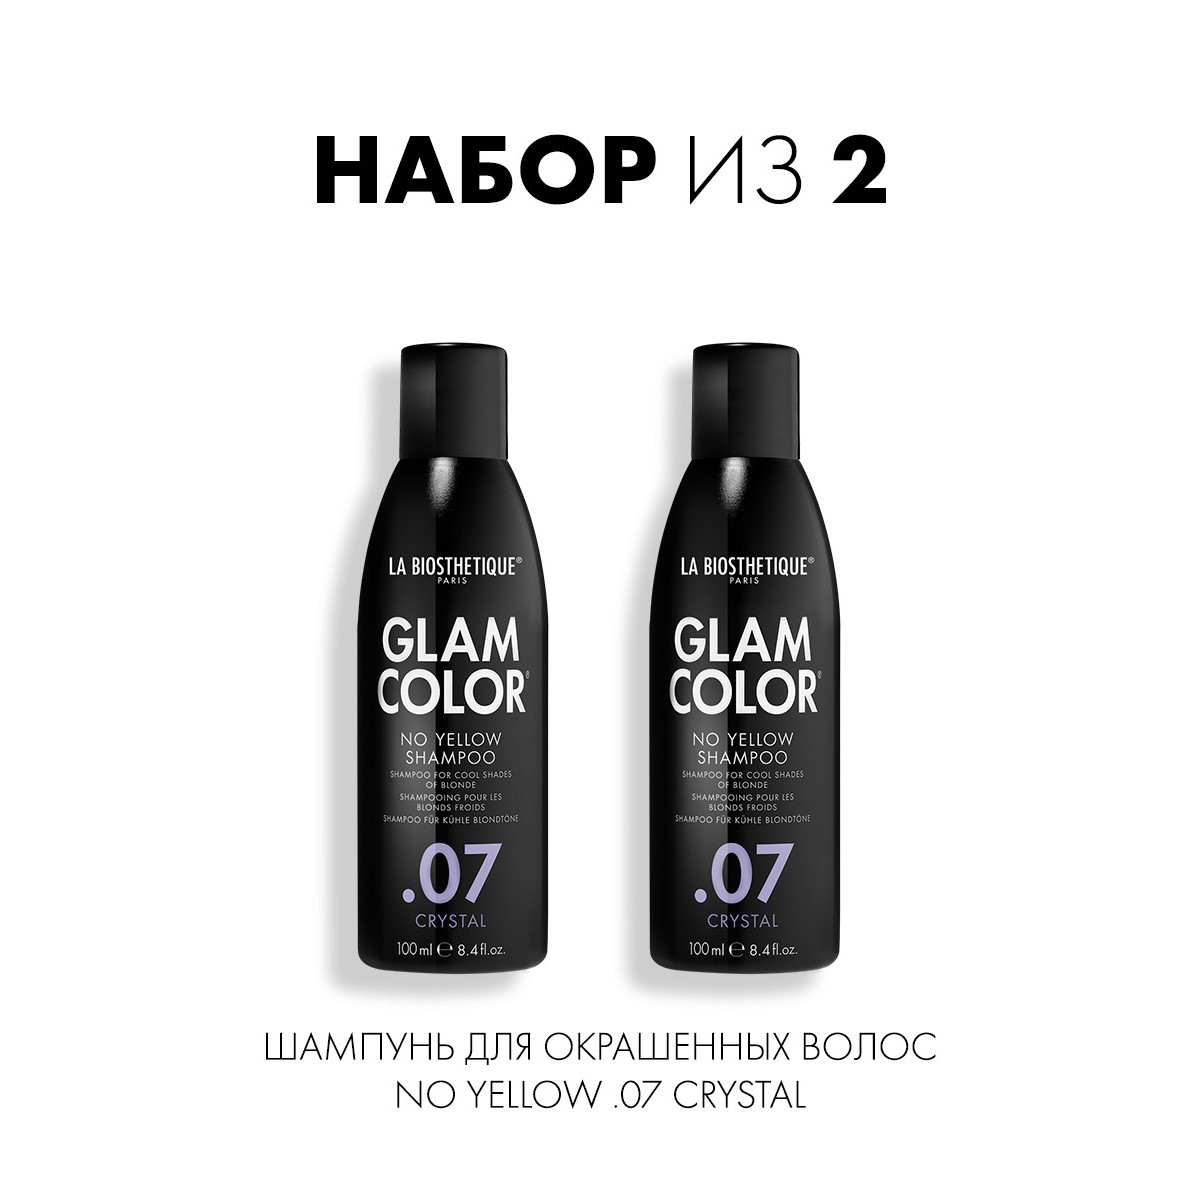 Шампунь для окрашенных волос La Biosthetique No Yellow Shampoo 07 Crystal 100 млх2